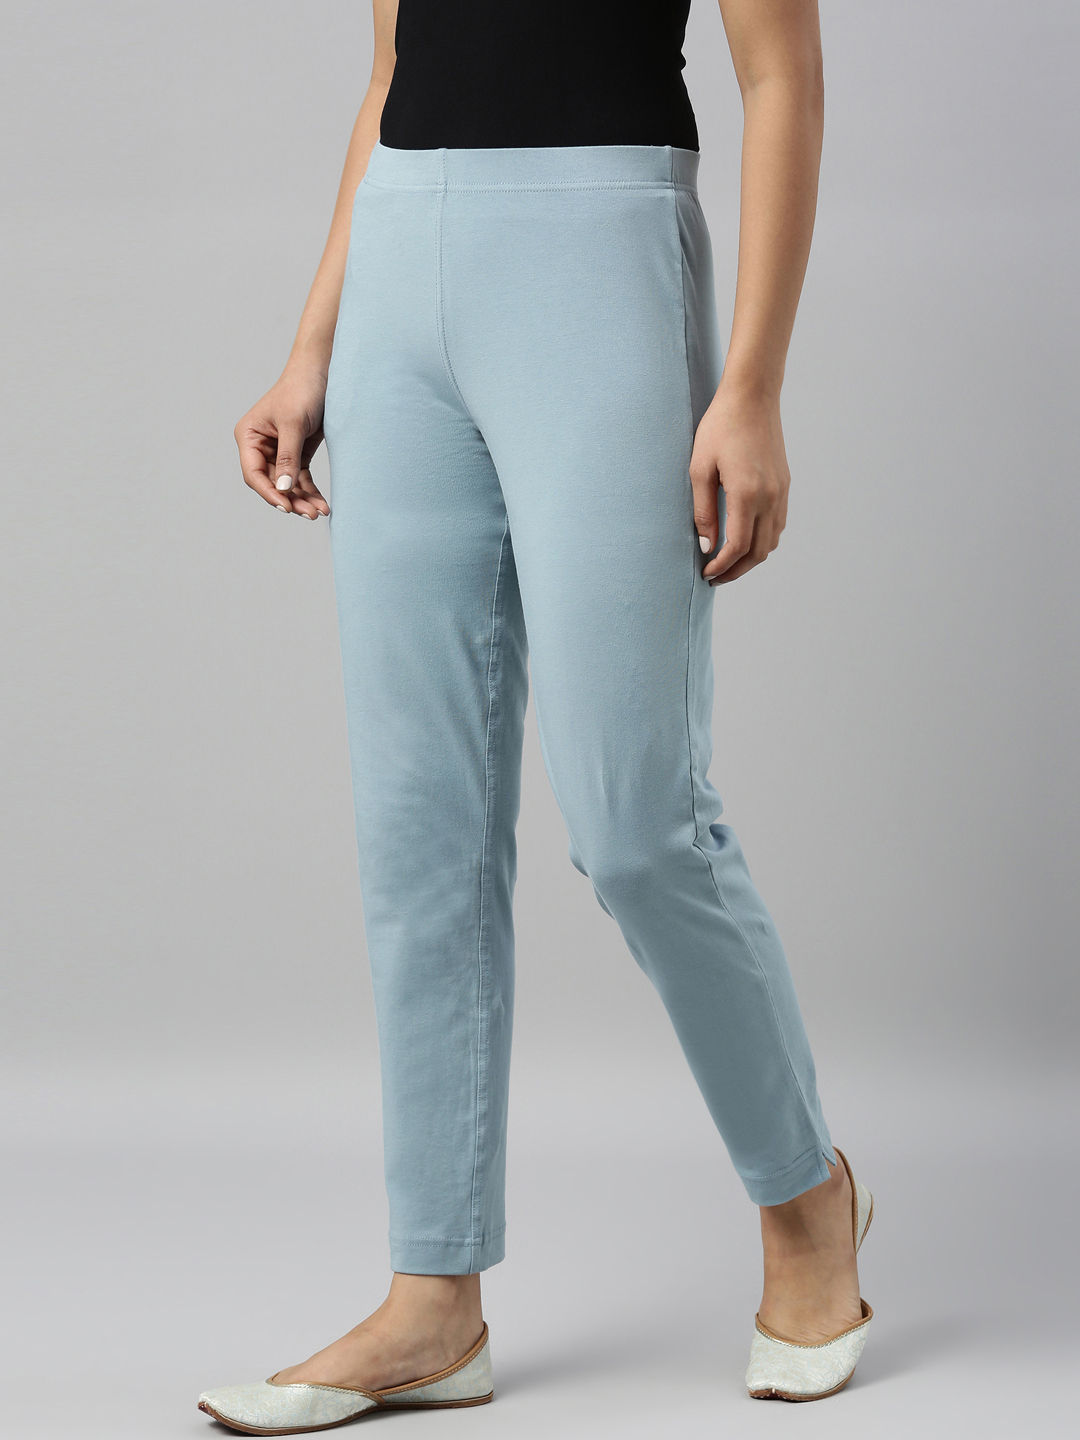 Women Sky Blue Trousers - Buy Women Sky Blue Trousers online in India